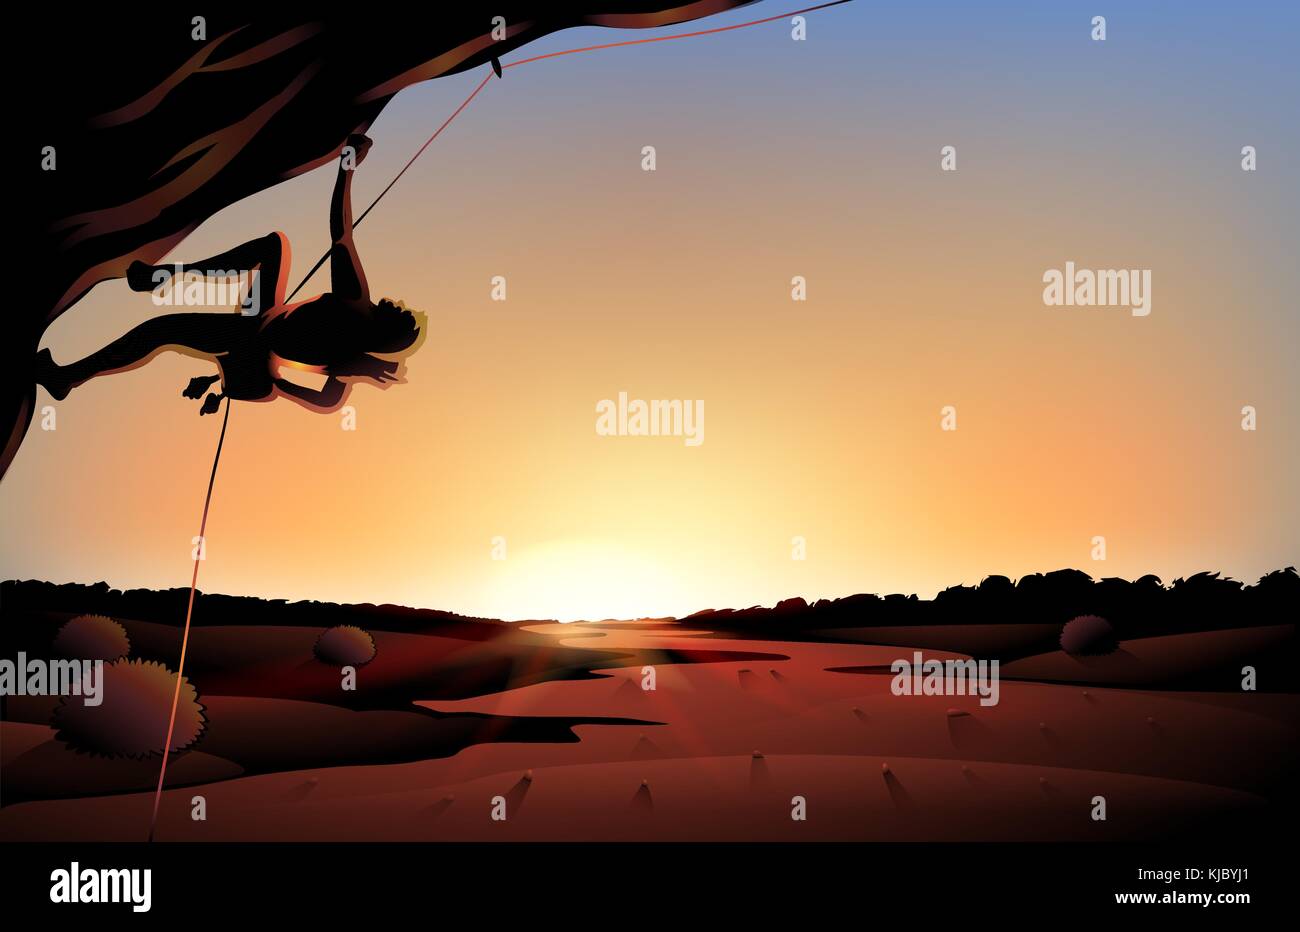 Illustrazione della vista al tramonto del deserto con un uomo arrampicata presso la struttura ad albero Illustrazione Vettoriale